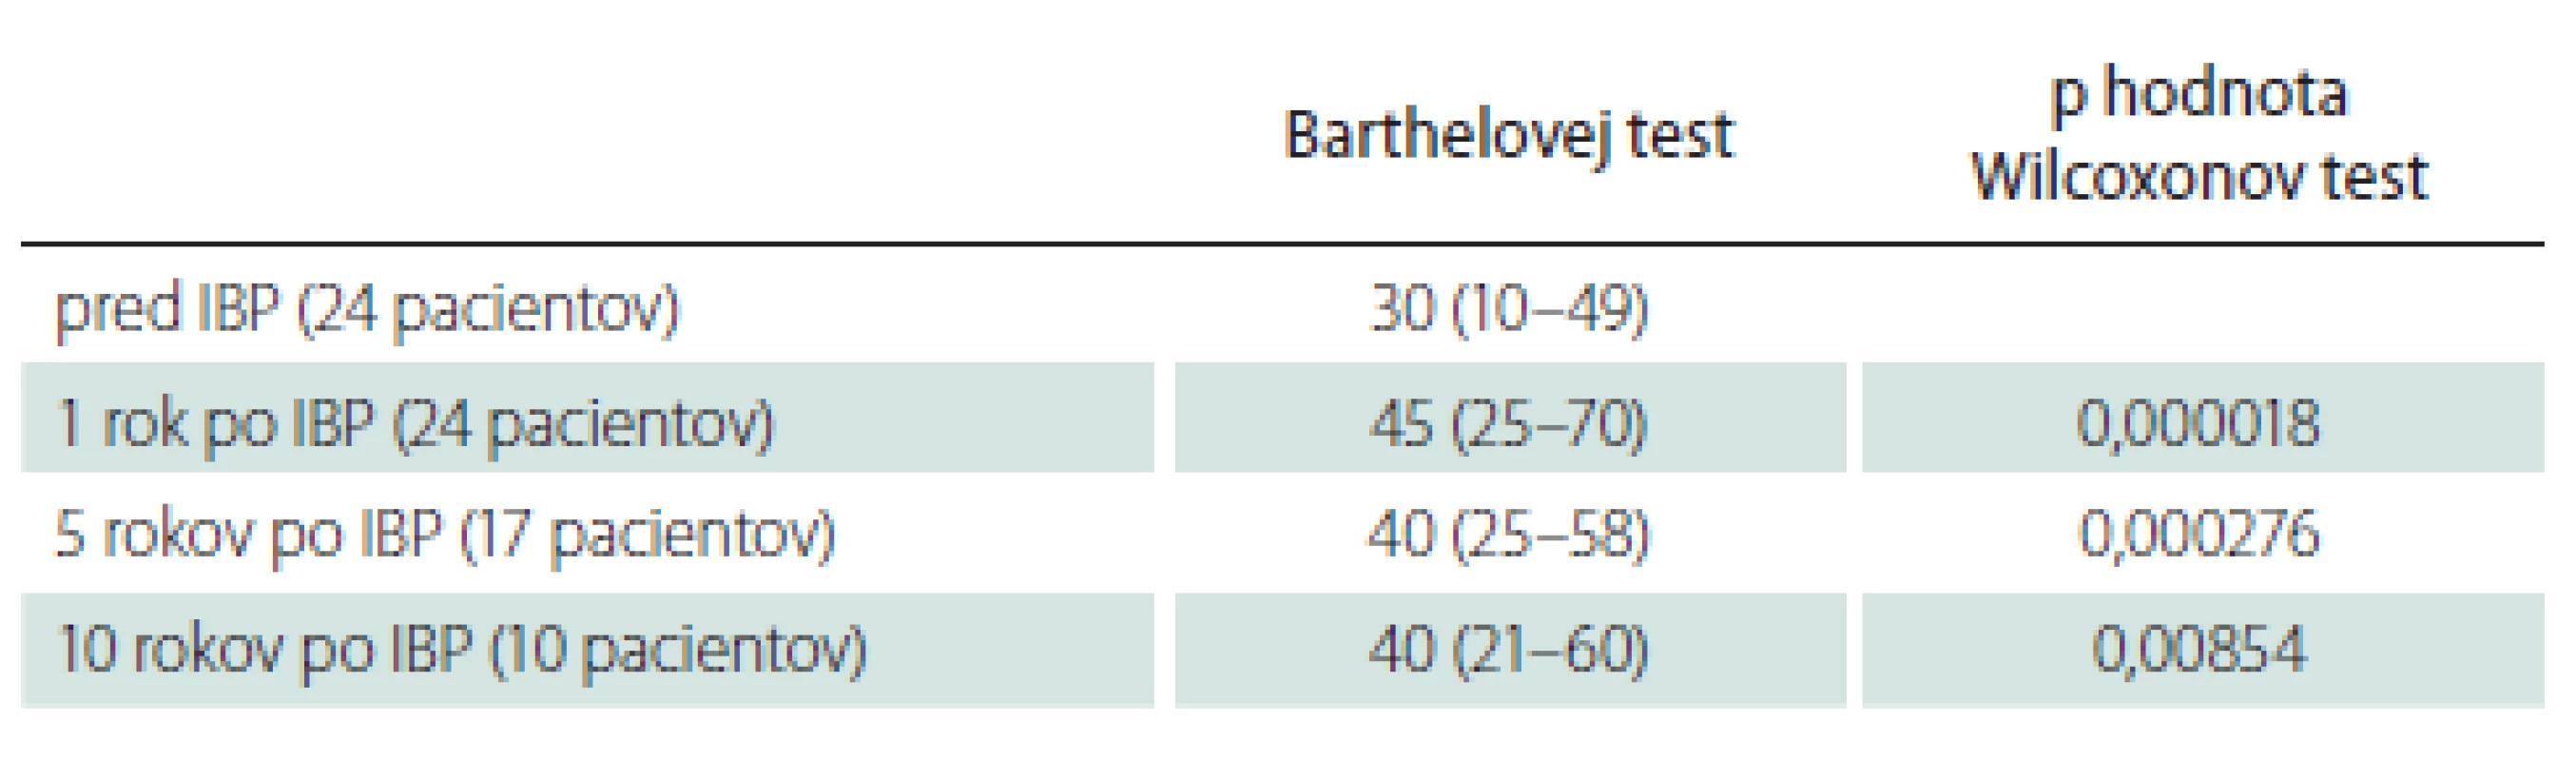 Barthelovej test, medián (medzikvartilové rozpätie), pred, 1 rok, 5 a 10 rokov
po implantácii baklofenovej pumpy, štatistická významnosť.